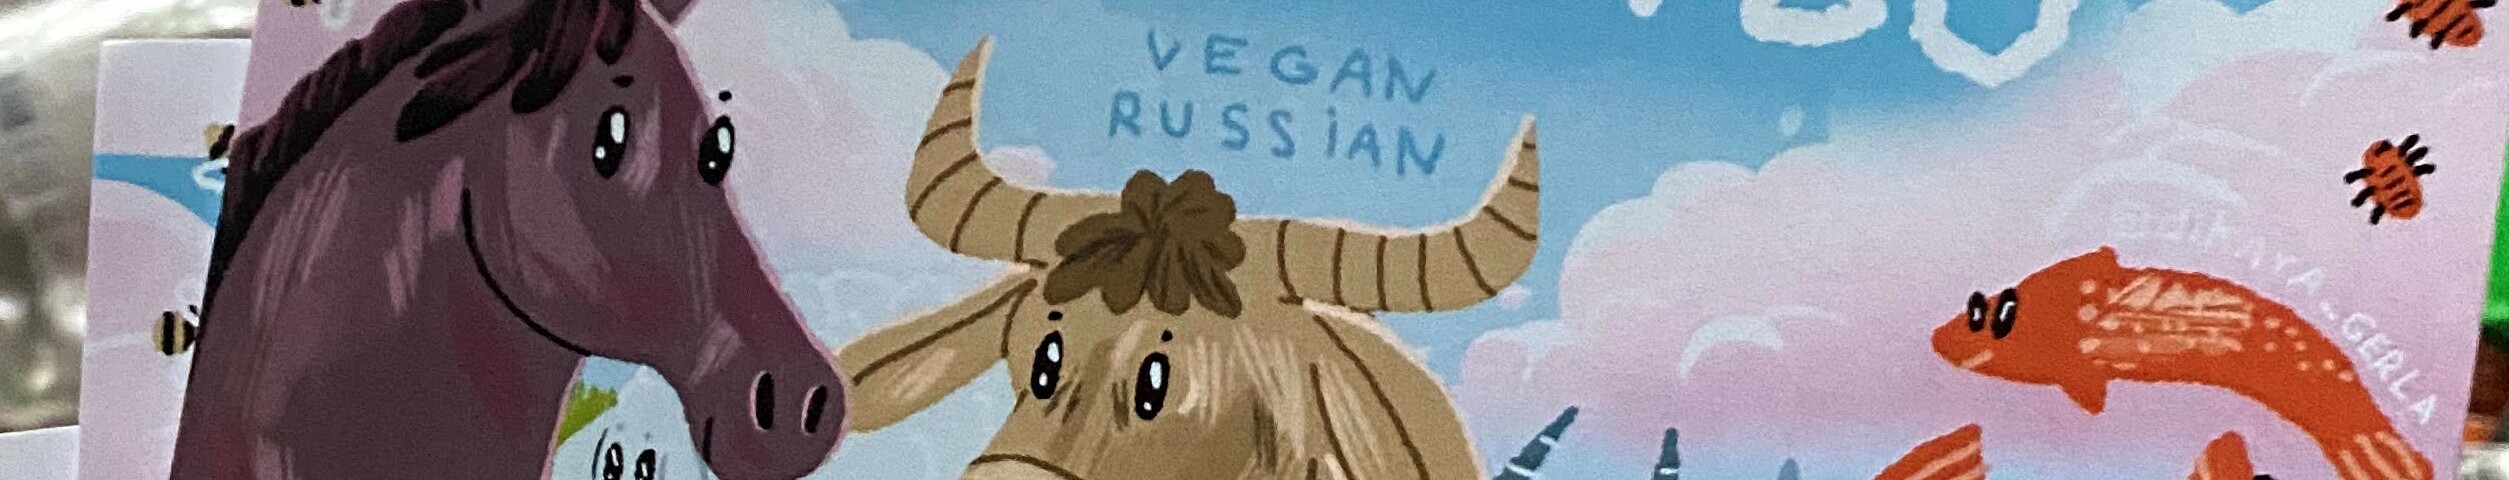 creator cover Vegan Russian